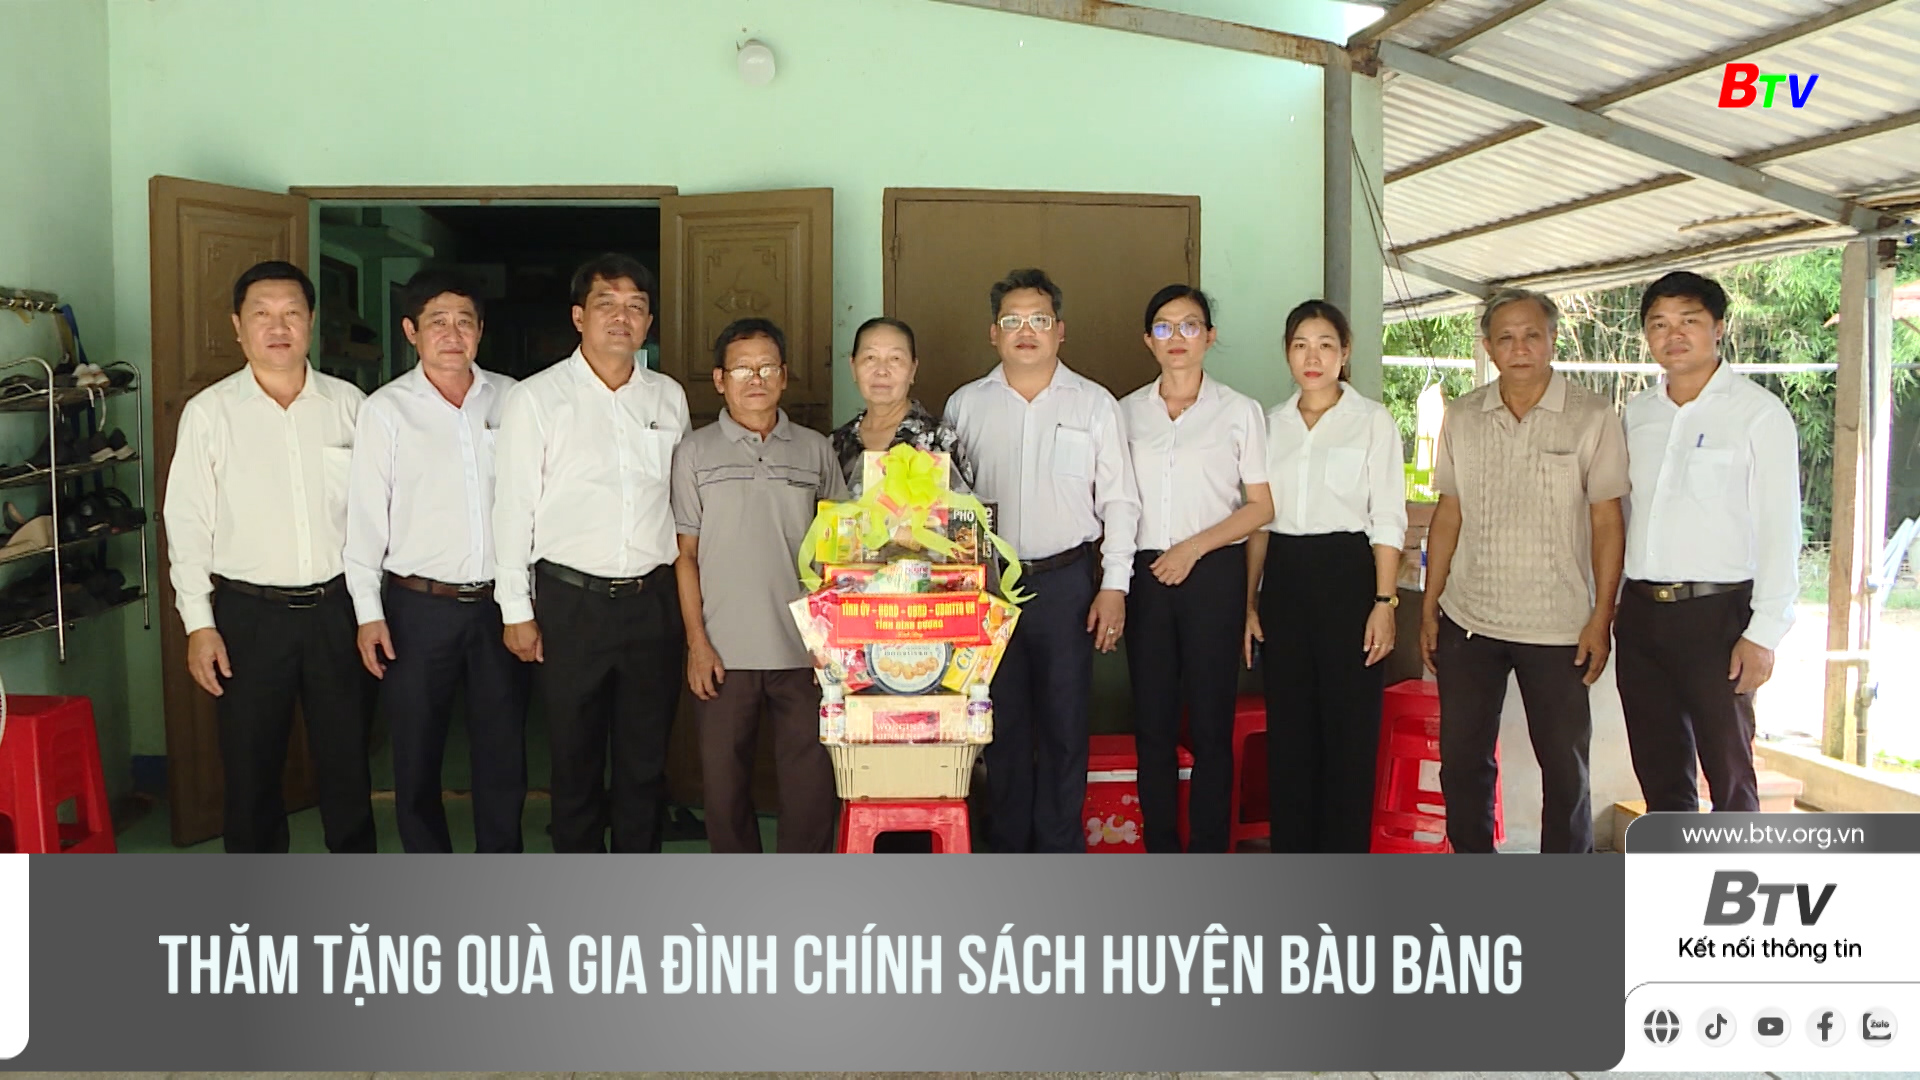 Thăm tặng quà gia đình chính sách huyện Bàu Bàng